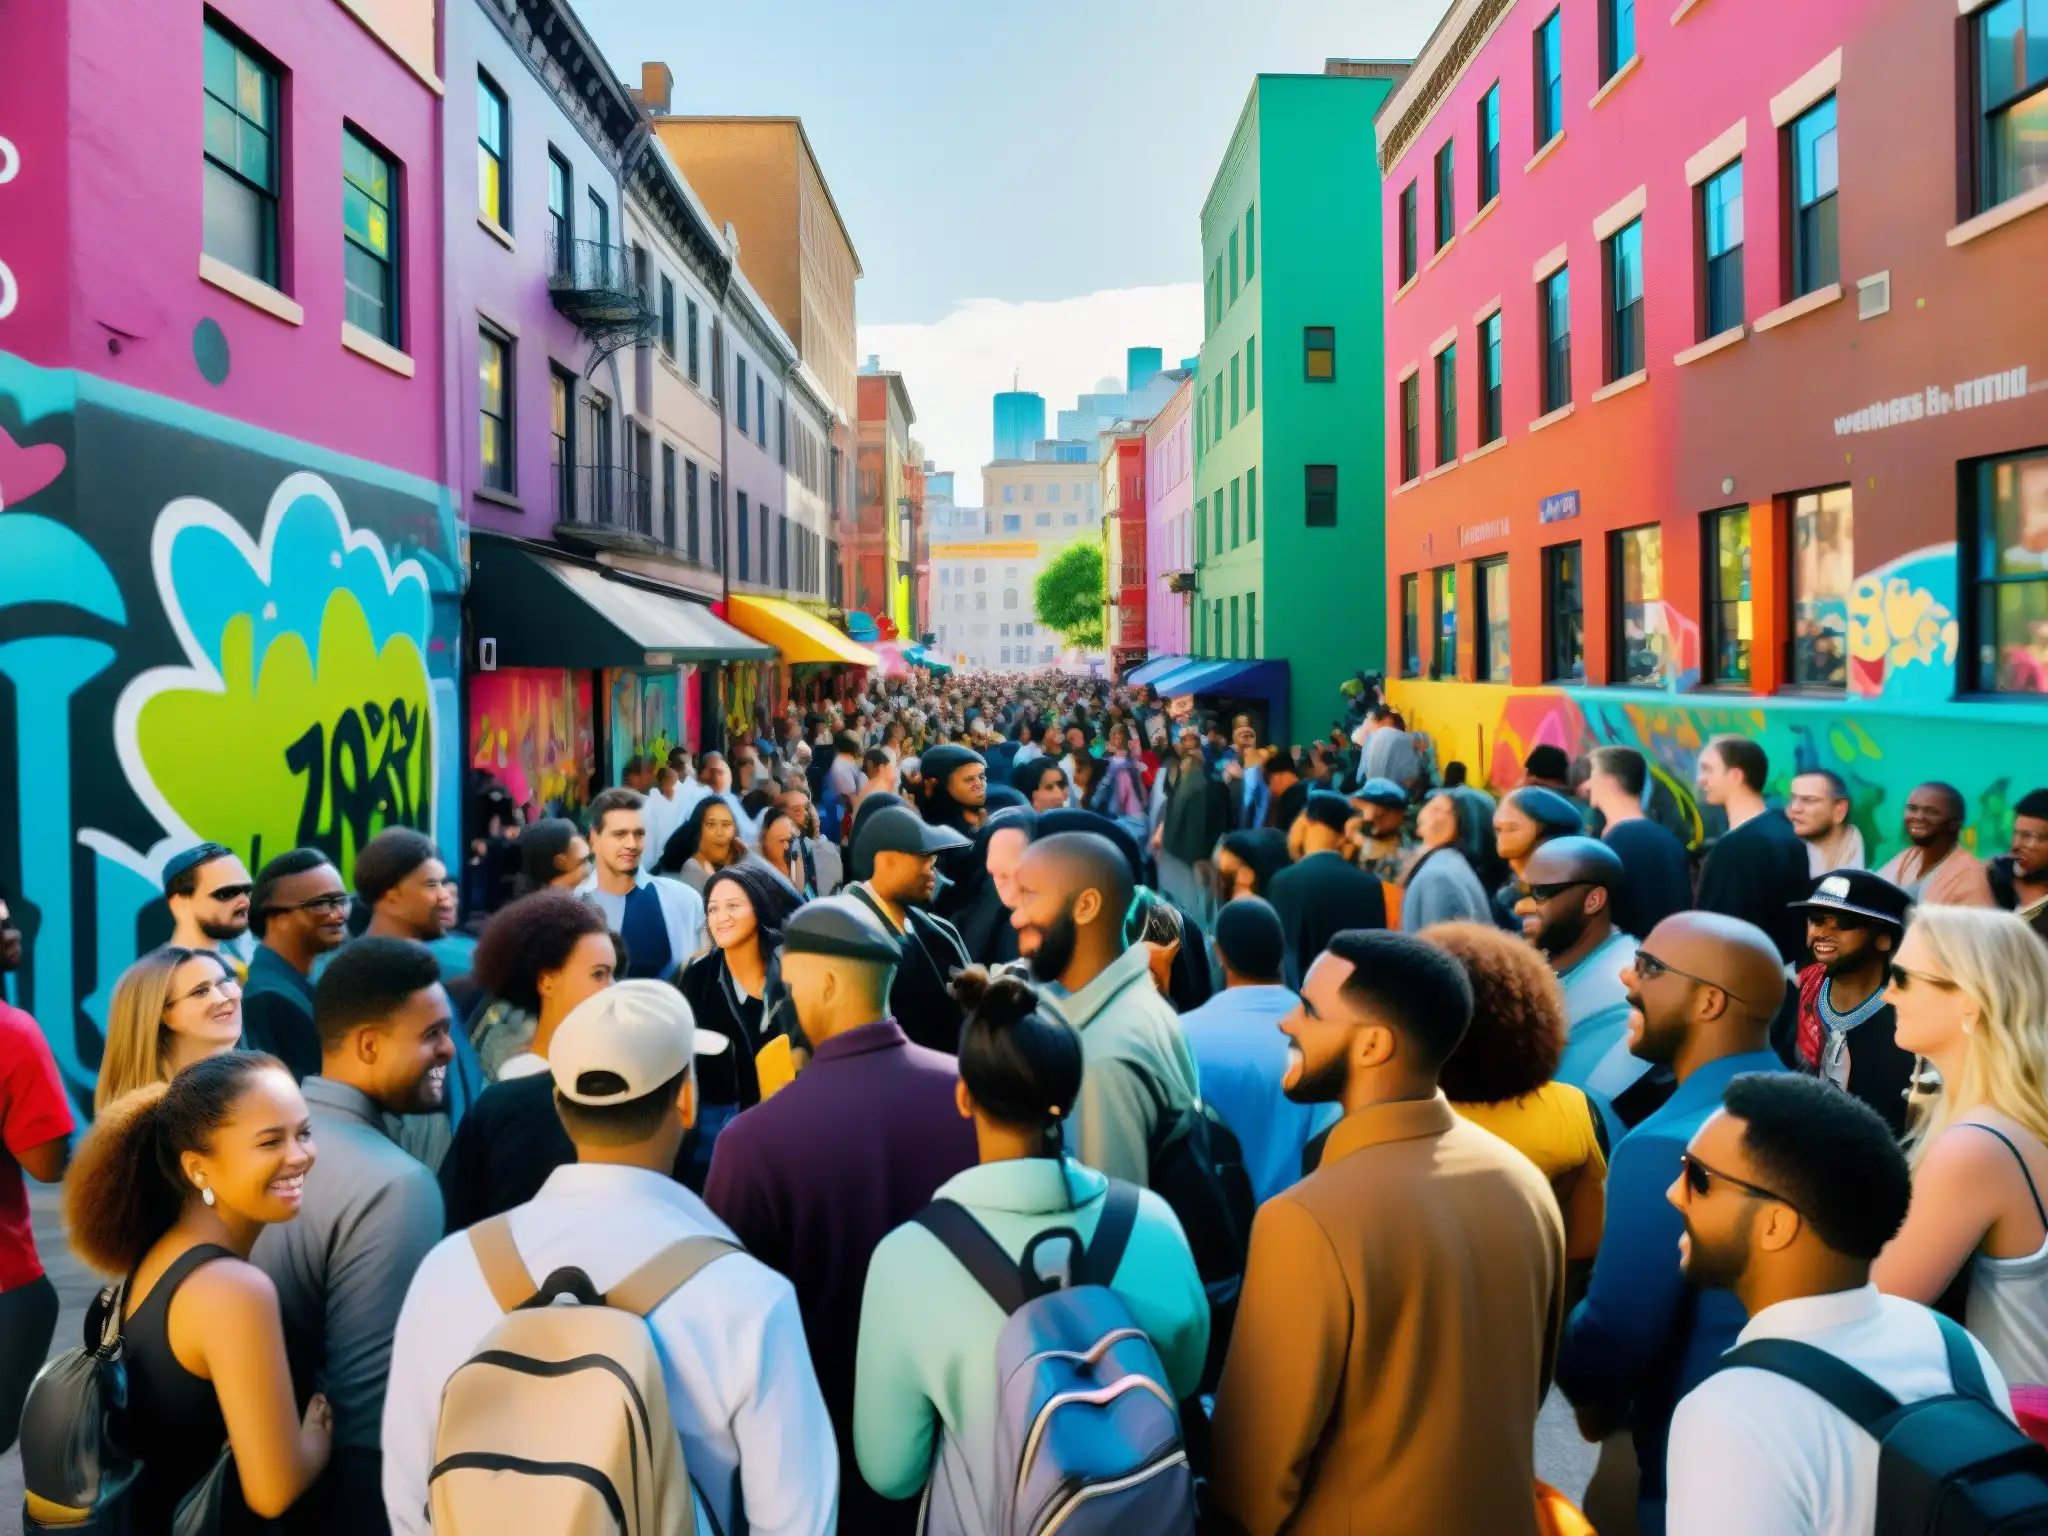 Una bulliciosa calle de la ciudad llena de gente conversando animadamente, con grafitis coloridos en las paredes